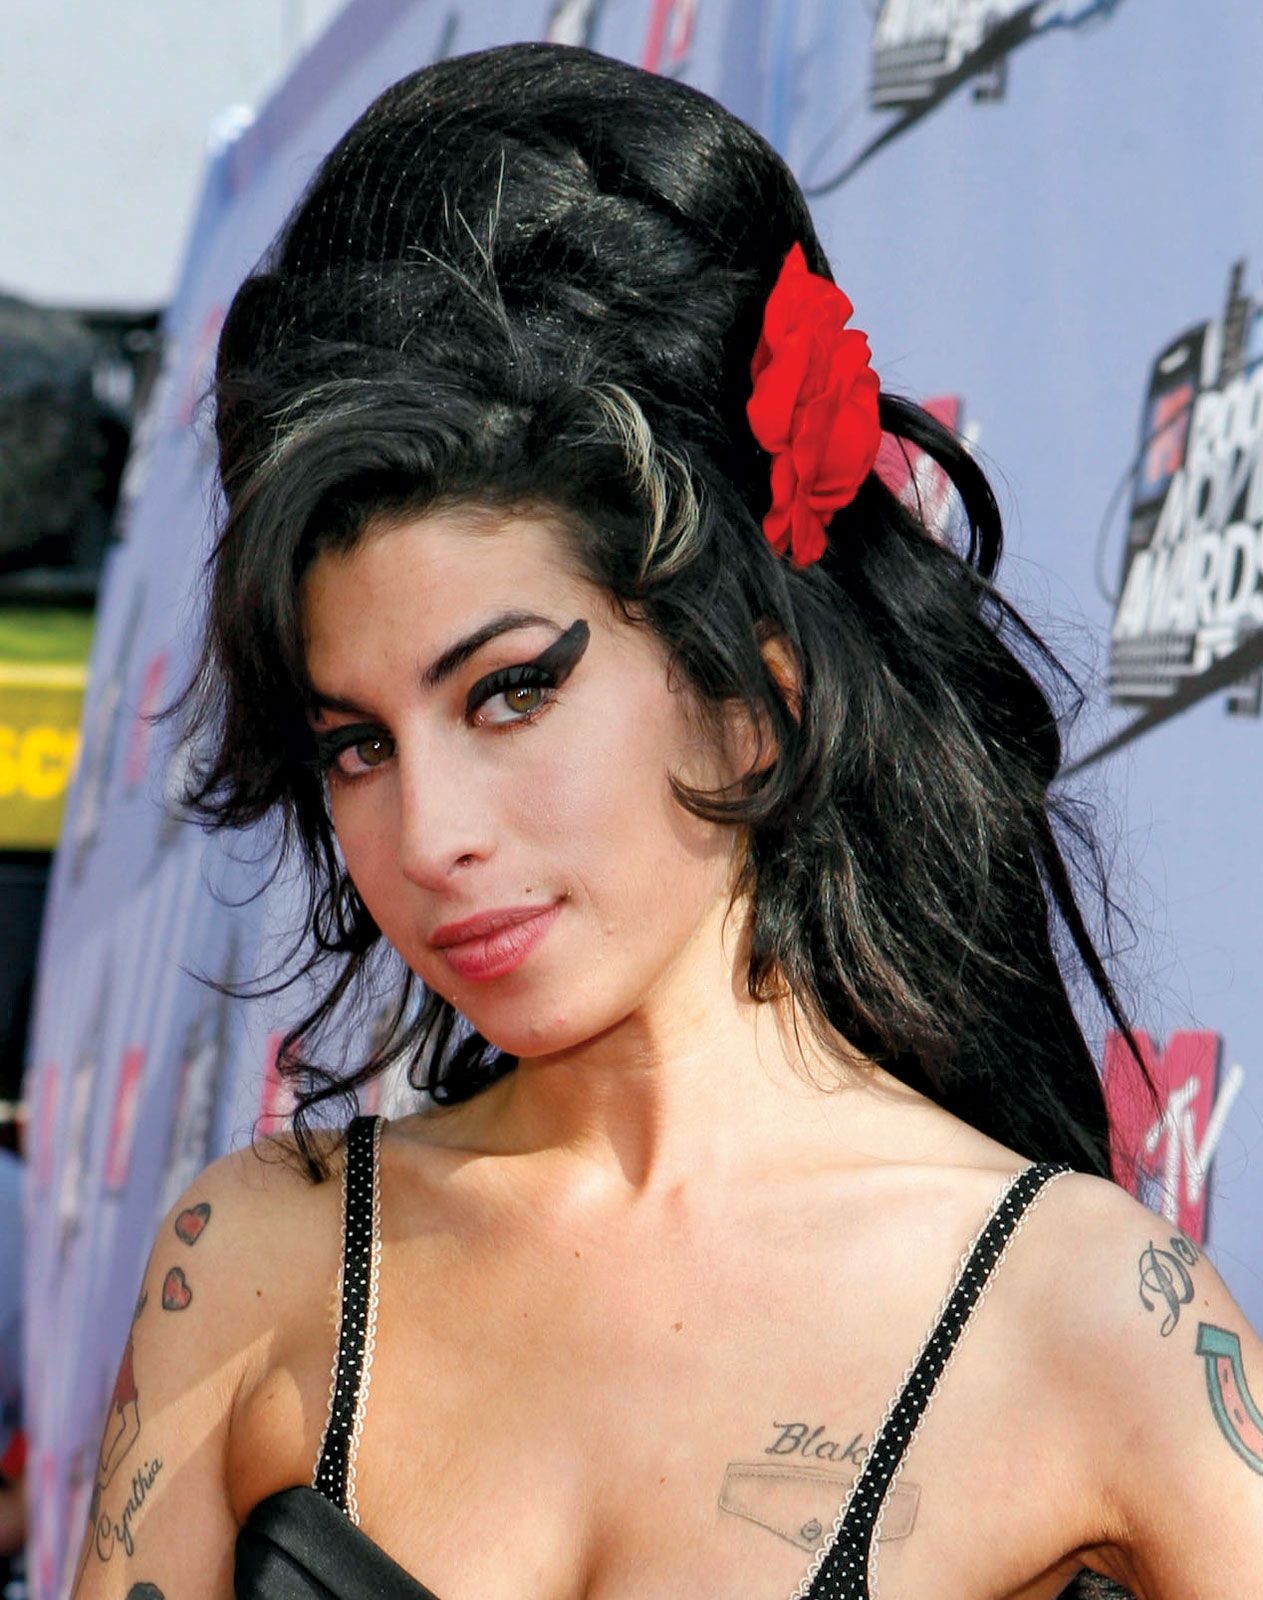  Življenjepis Amy Winehouse